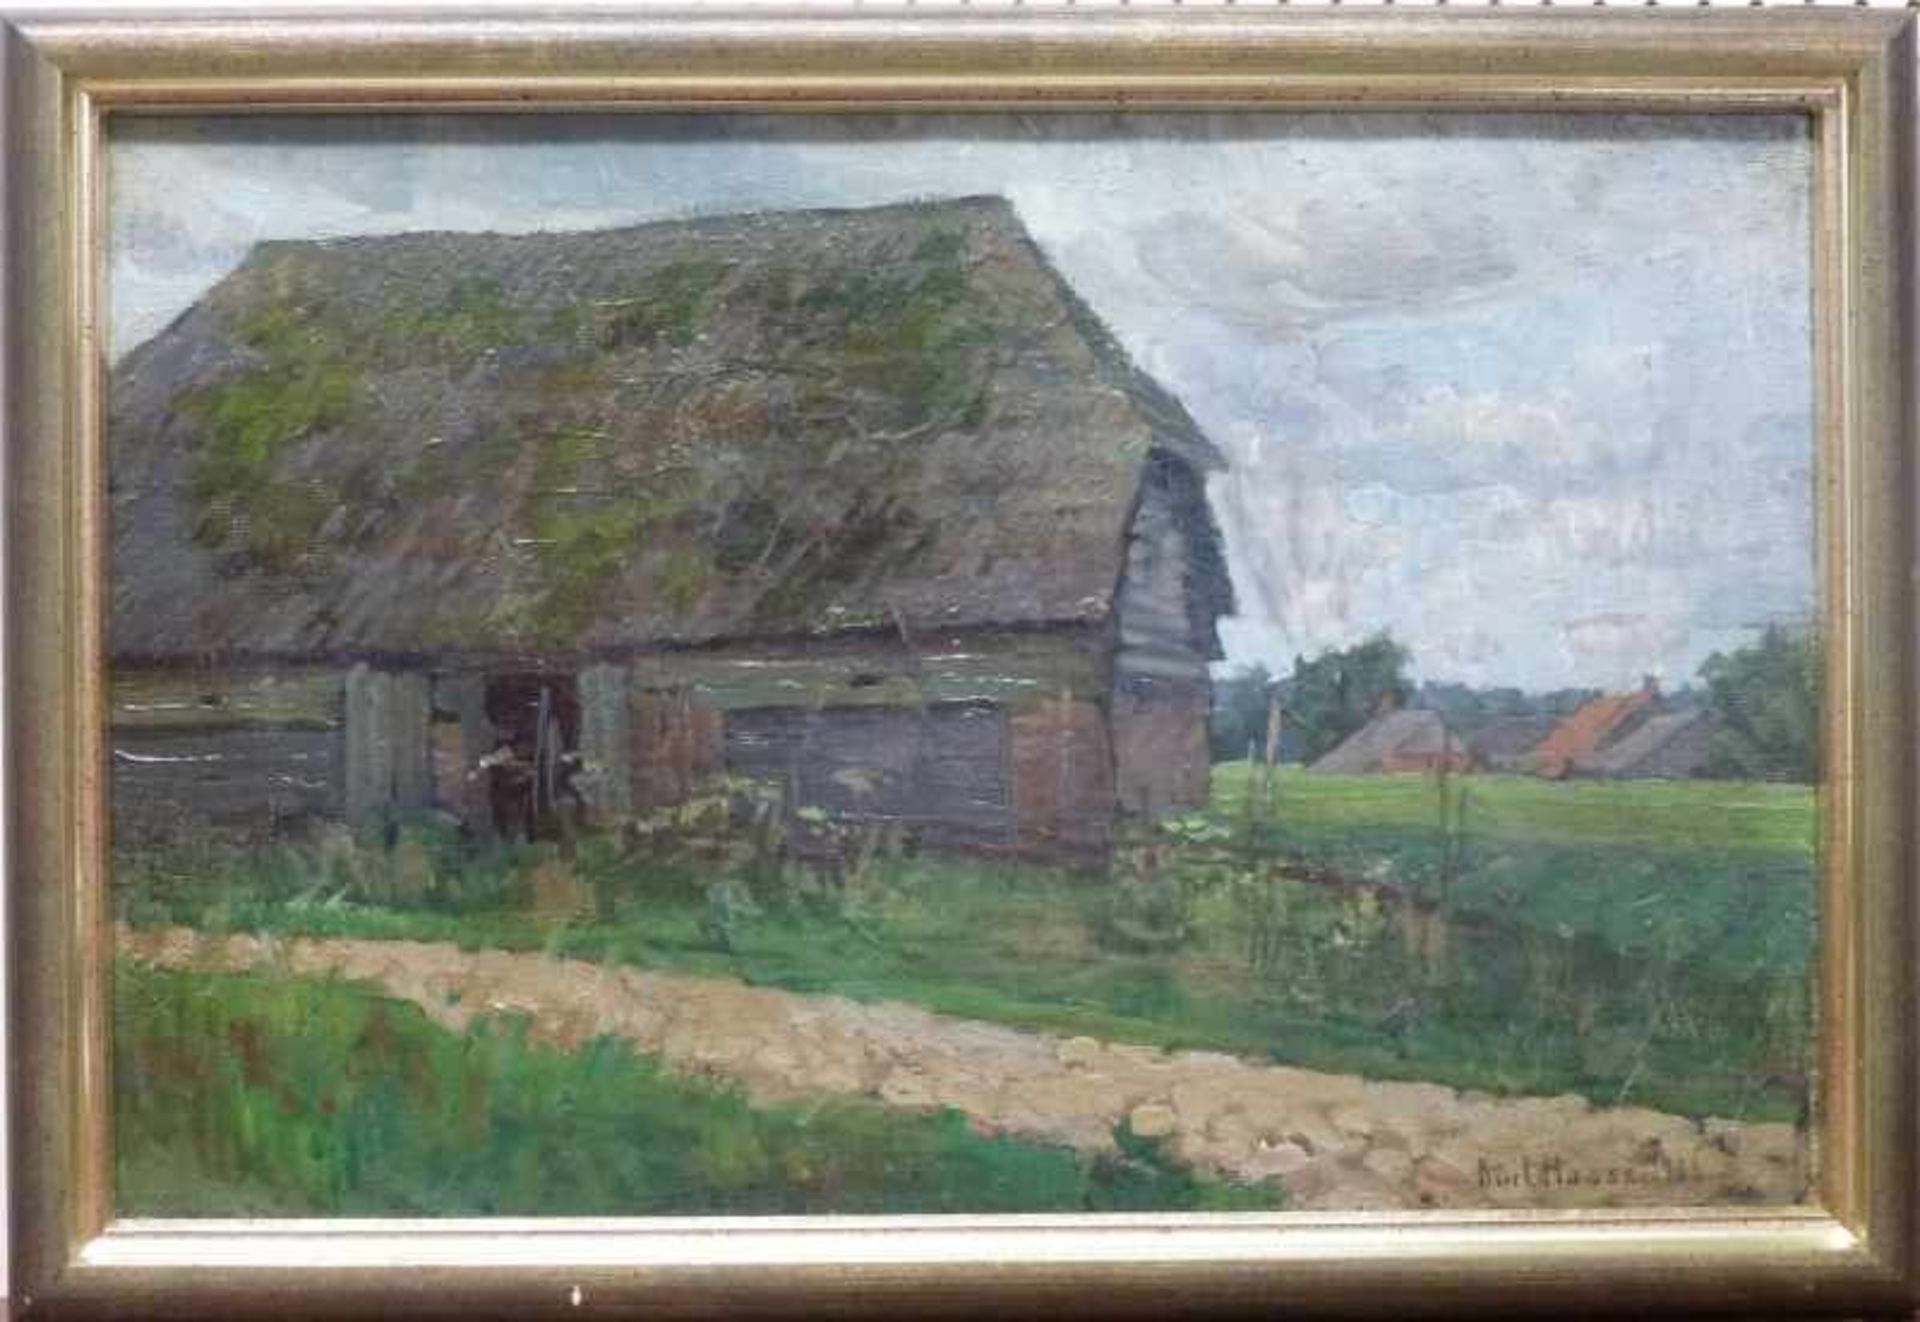 Bauernhäuser aus "Livland" 1906, Kurt Haase-Jastrow (1885-1958) Öl/Lw, kl. Retouche, R,31x48cm